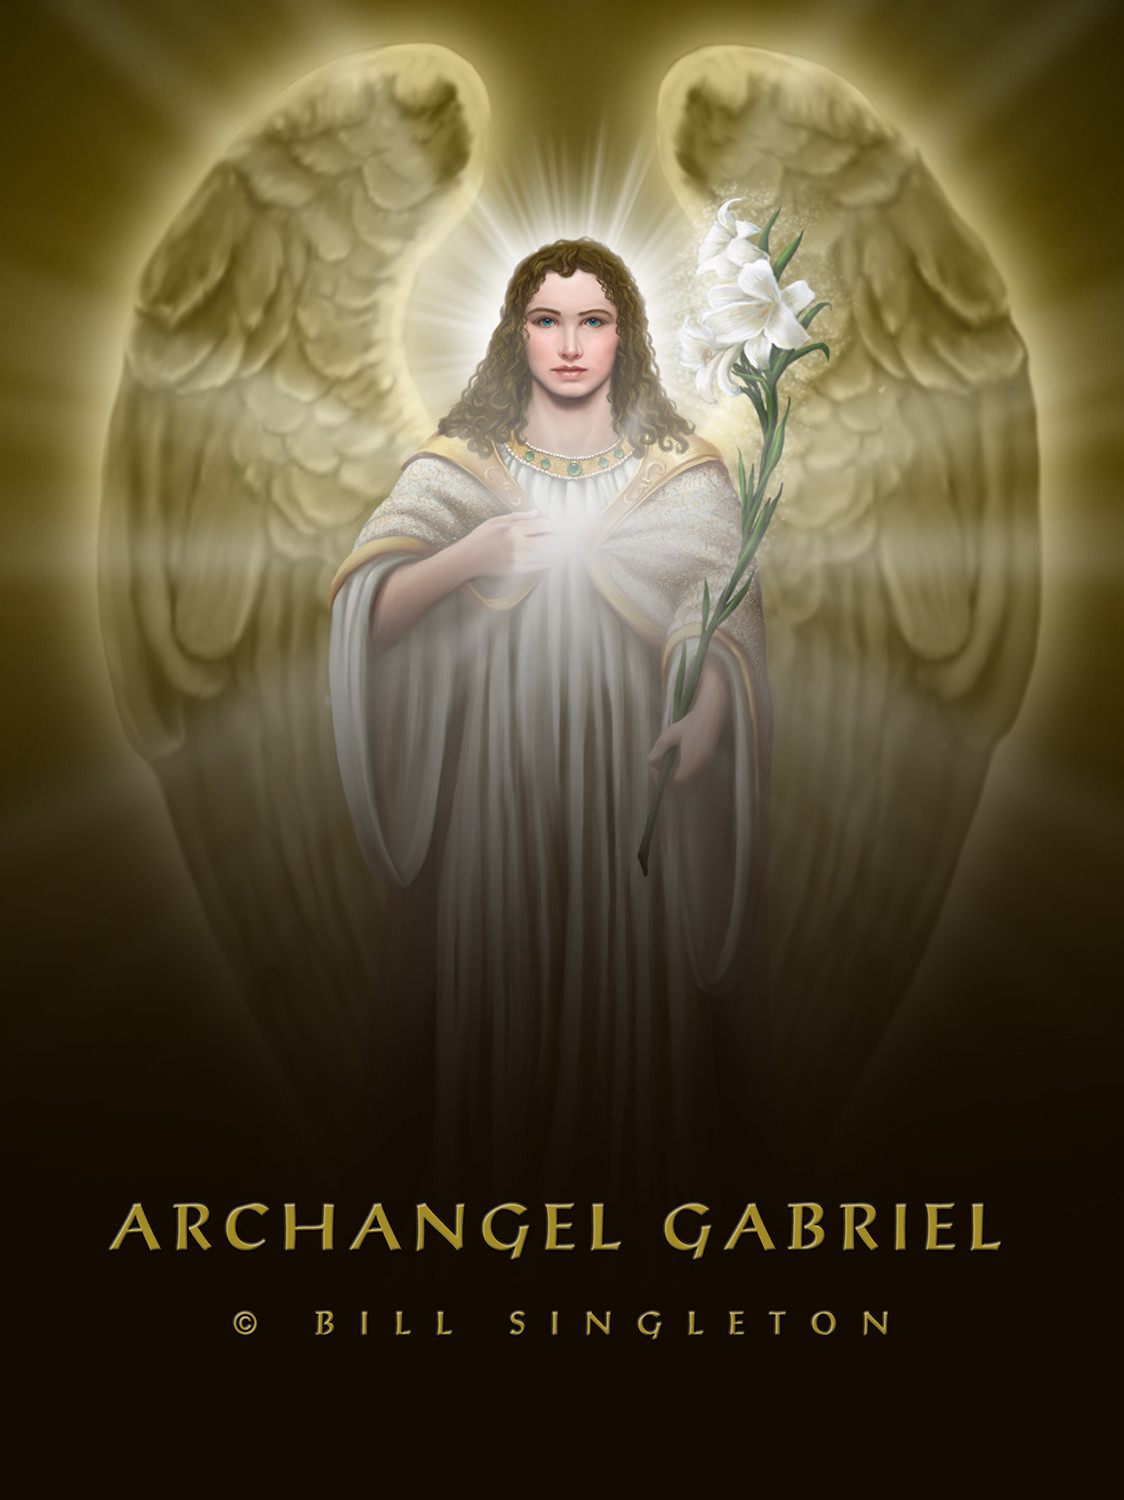 ArtStation - Archangel Gabriel, Bill Singleton